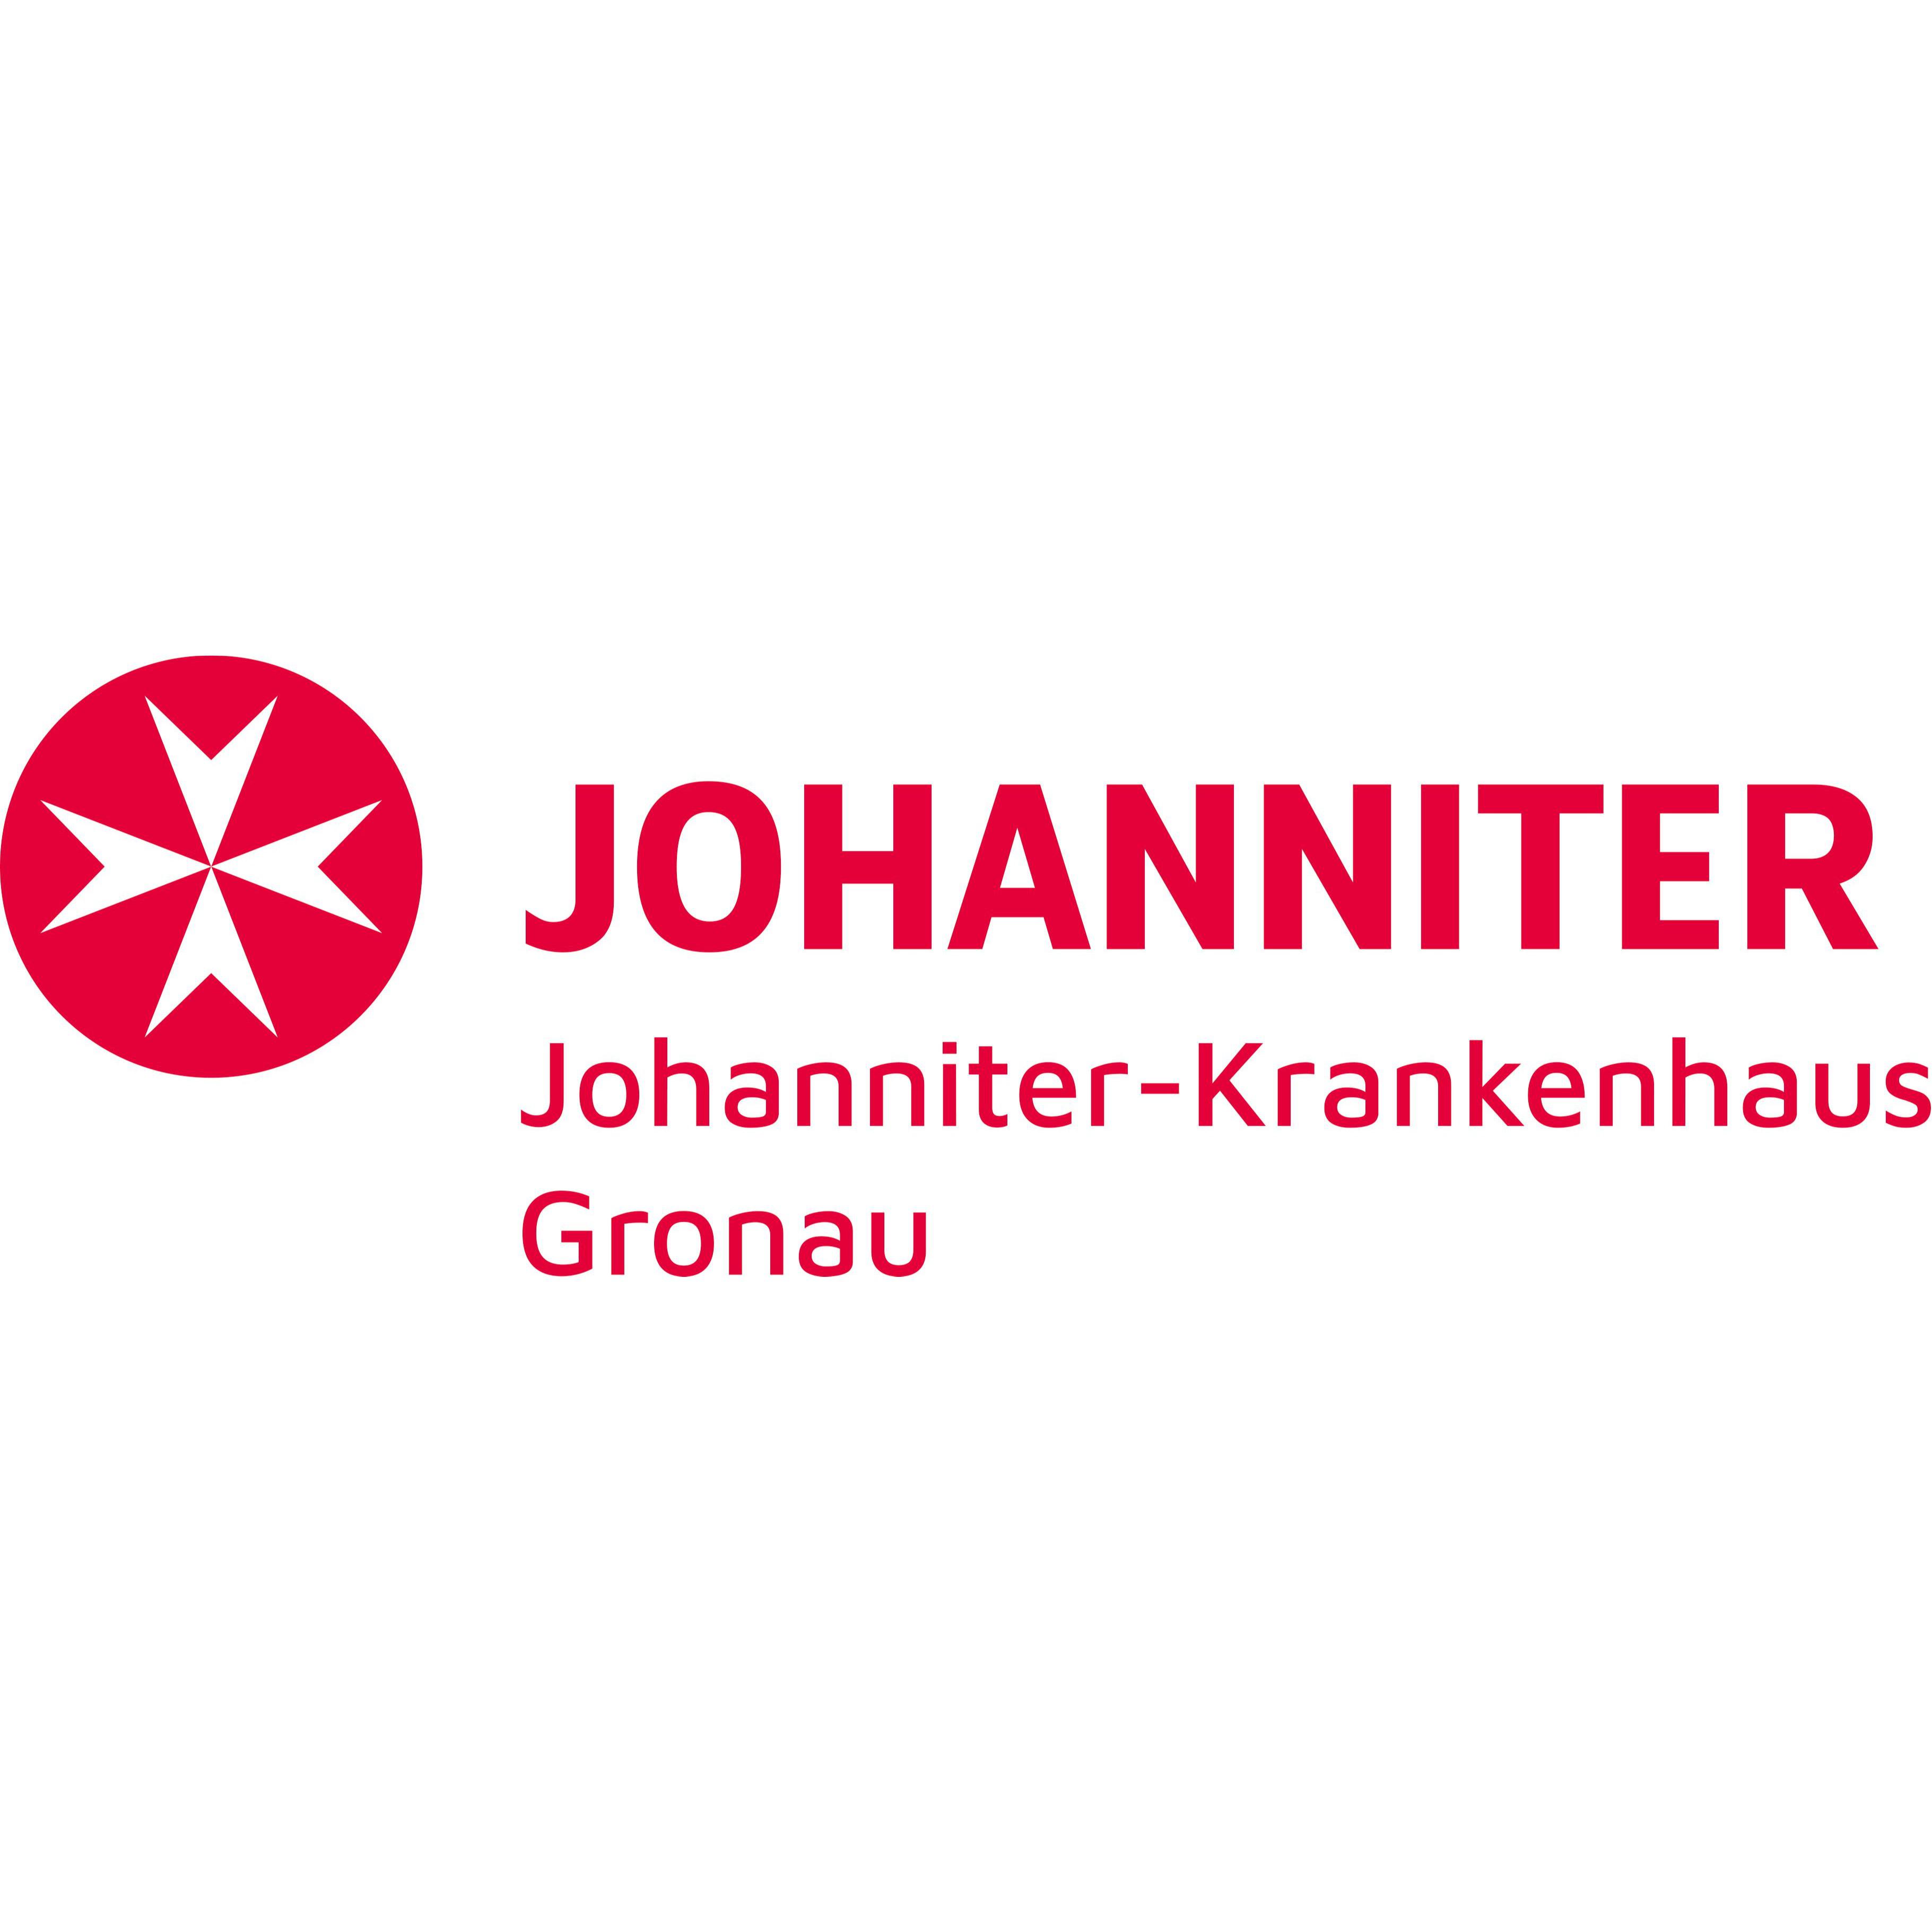 Johanniter-Krankenhaus Gronau Logo